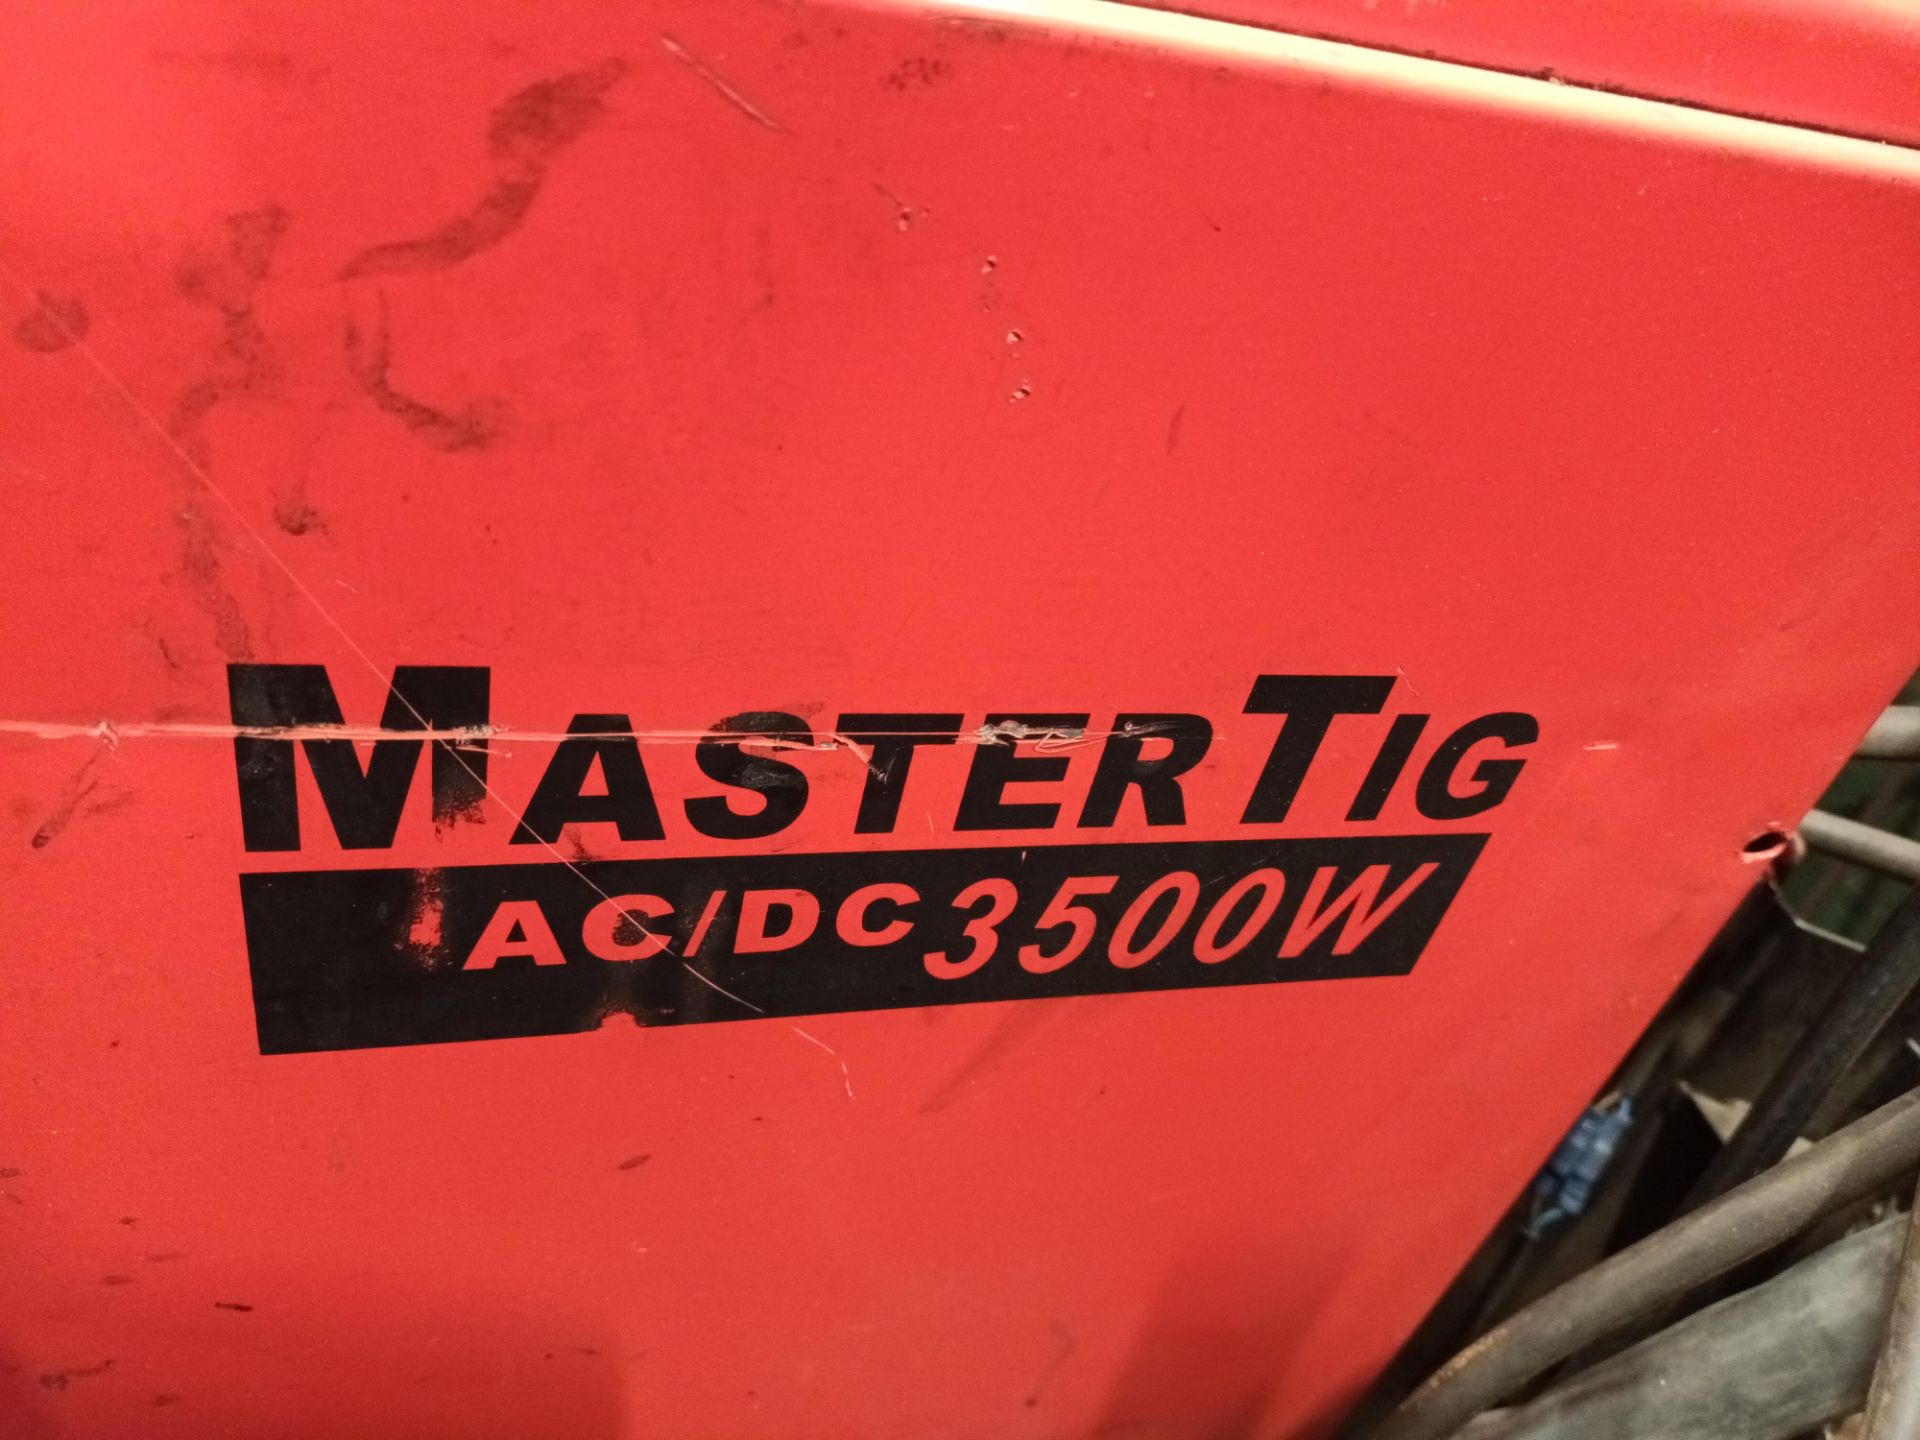 Kemppi Mastertig AC/DC 3500W tig welder, Serial no. 1093329P - Image 3 of 6